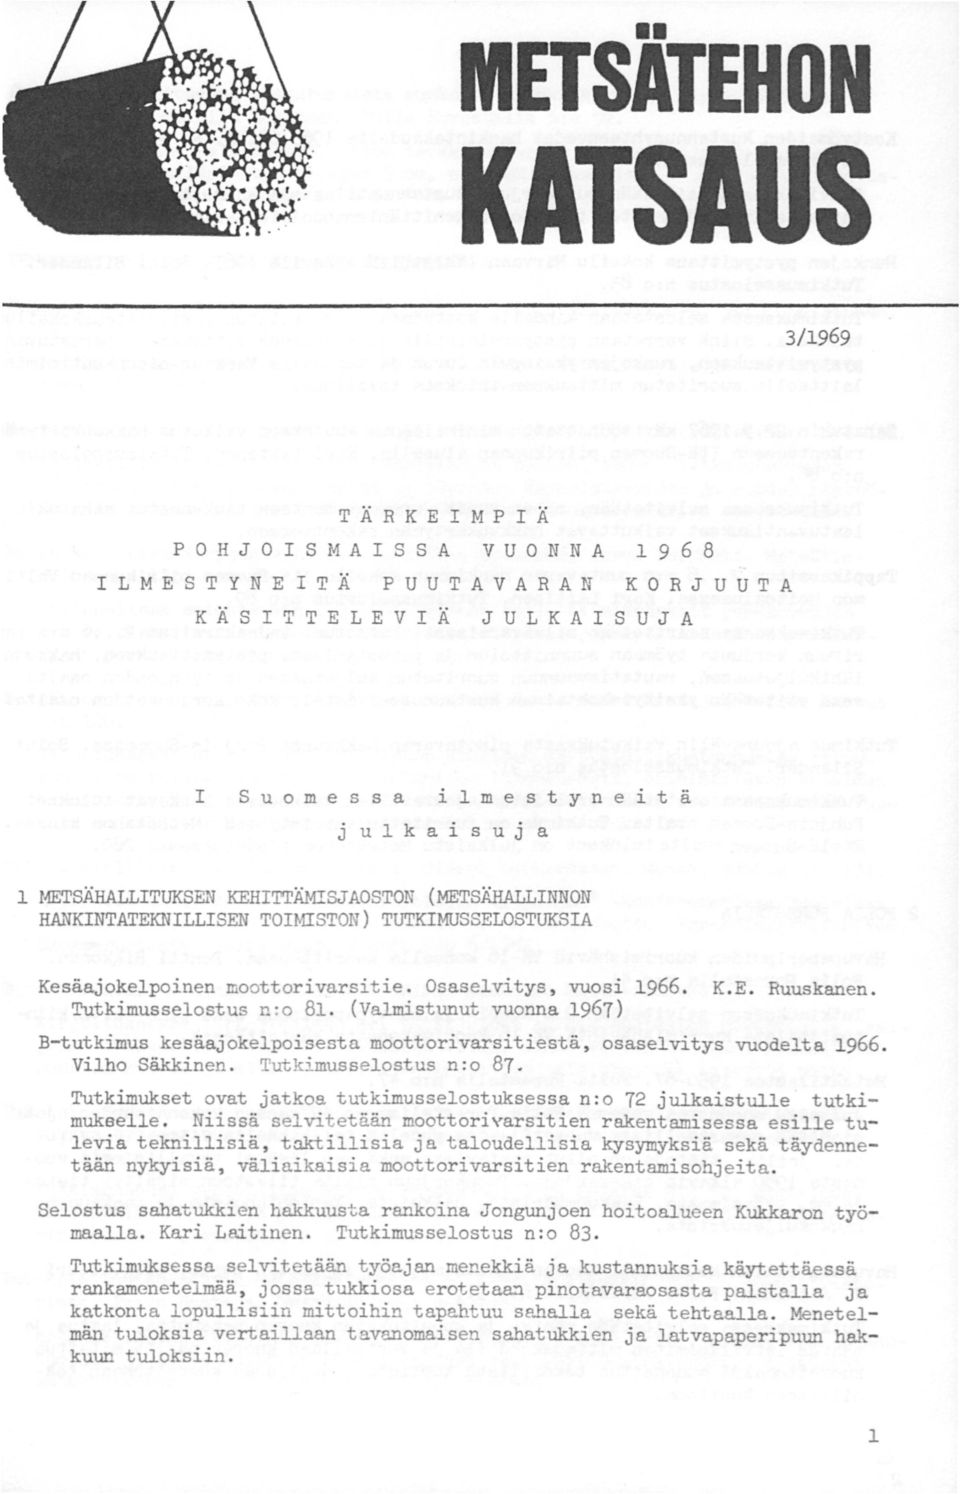 Tutkimusselostus n:o 81. (Valmistunut vuonna 1967) B-tutkimus kesäajokelpoisesta moottorivarsitiestä, osaselvitys vuodelta 1966. Vilho Säkkinen. Tutkimusselostus n :o 87.